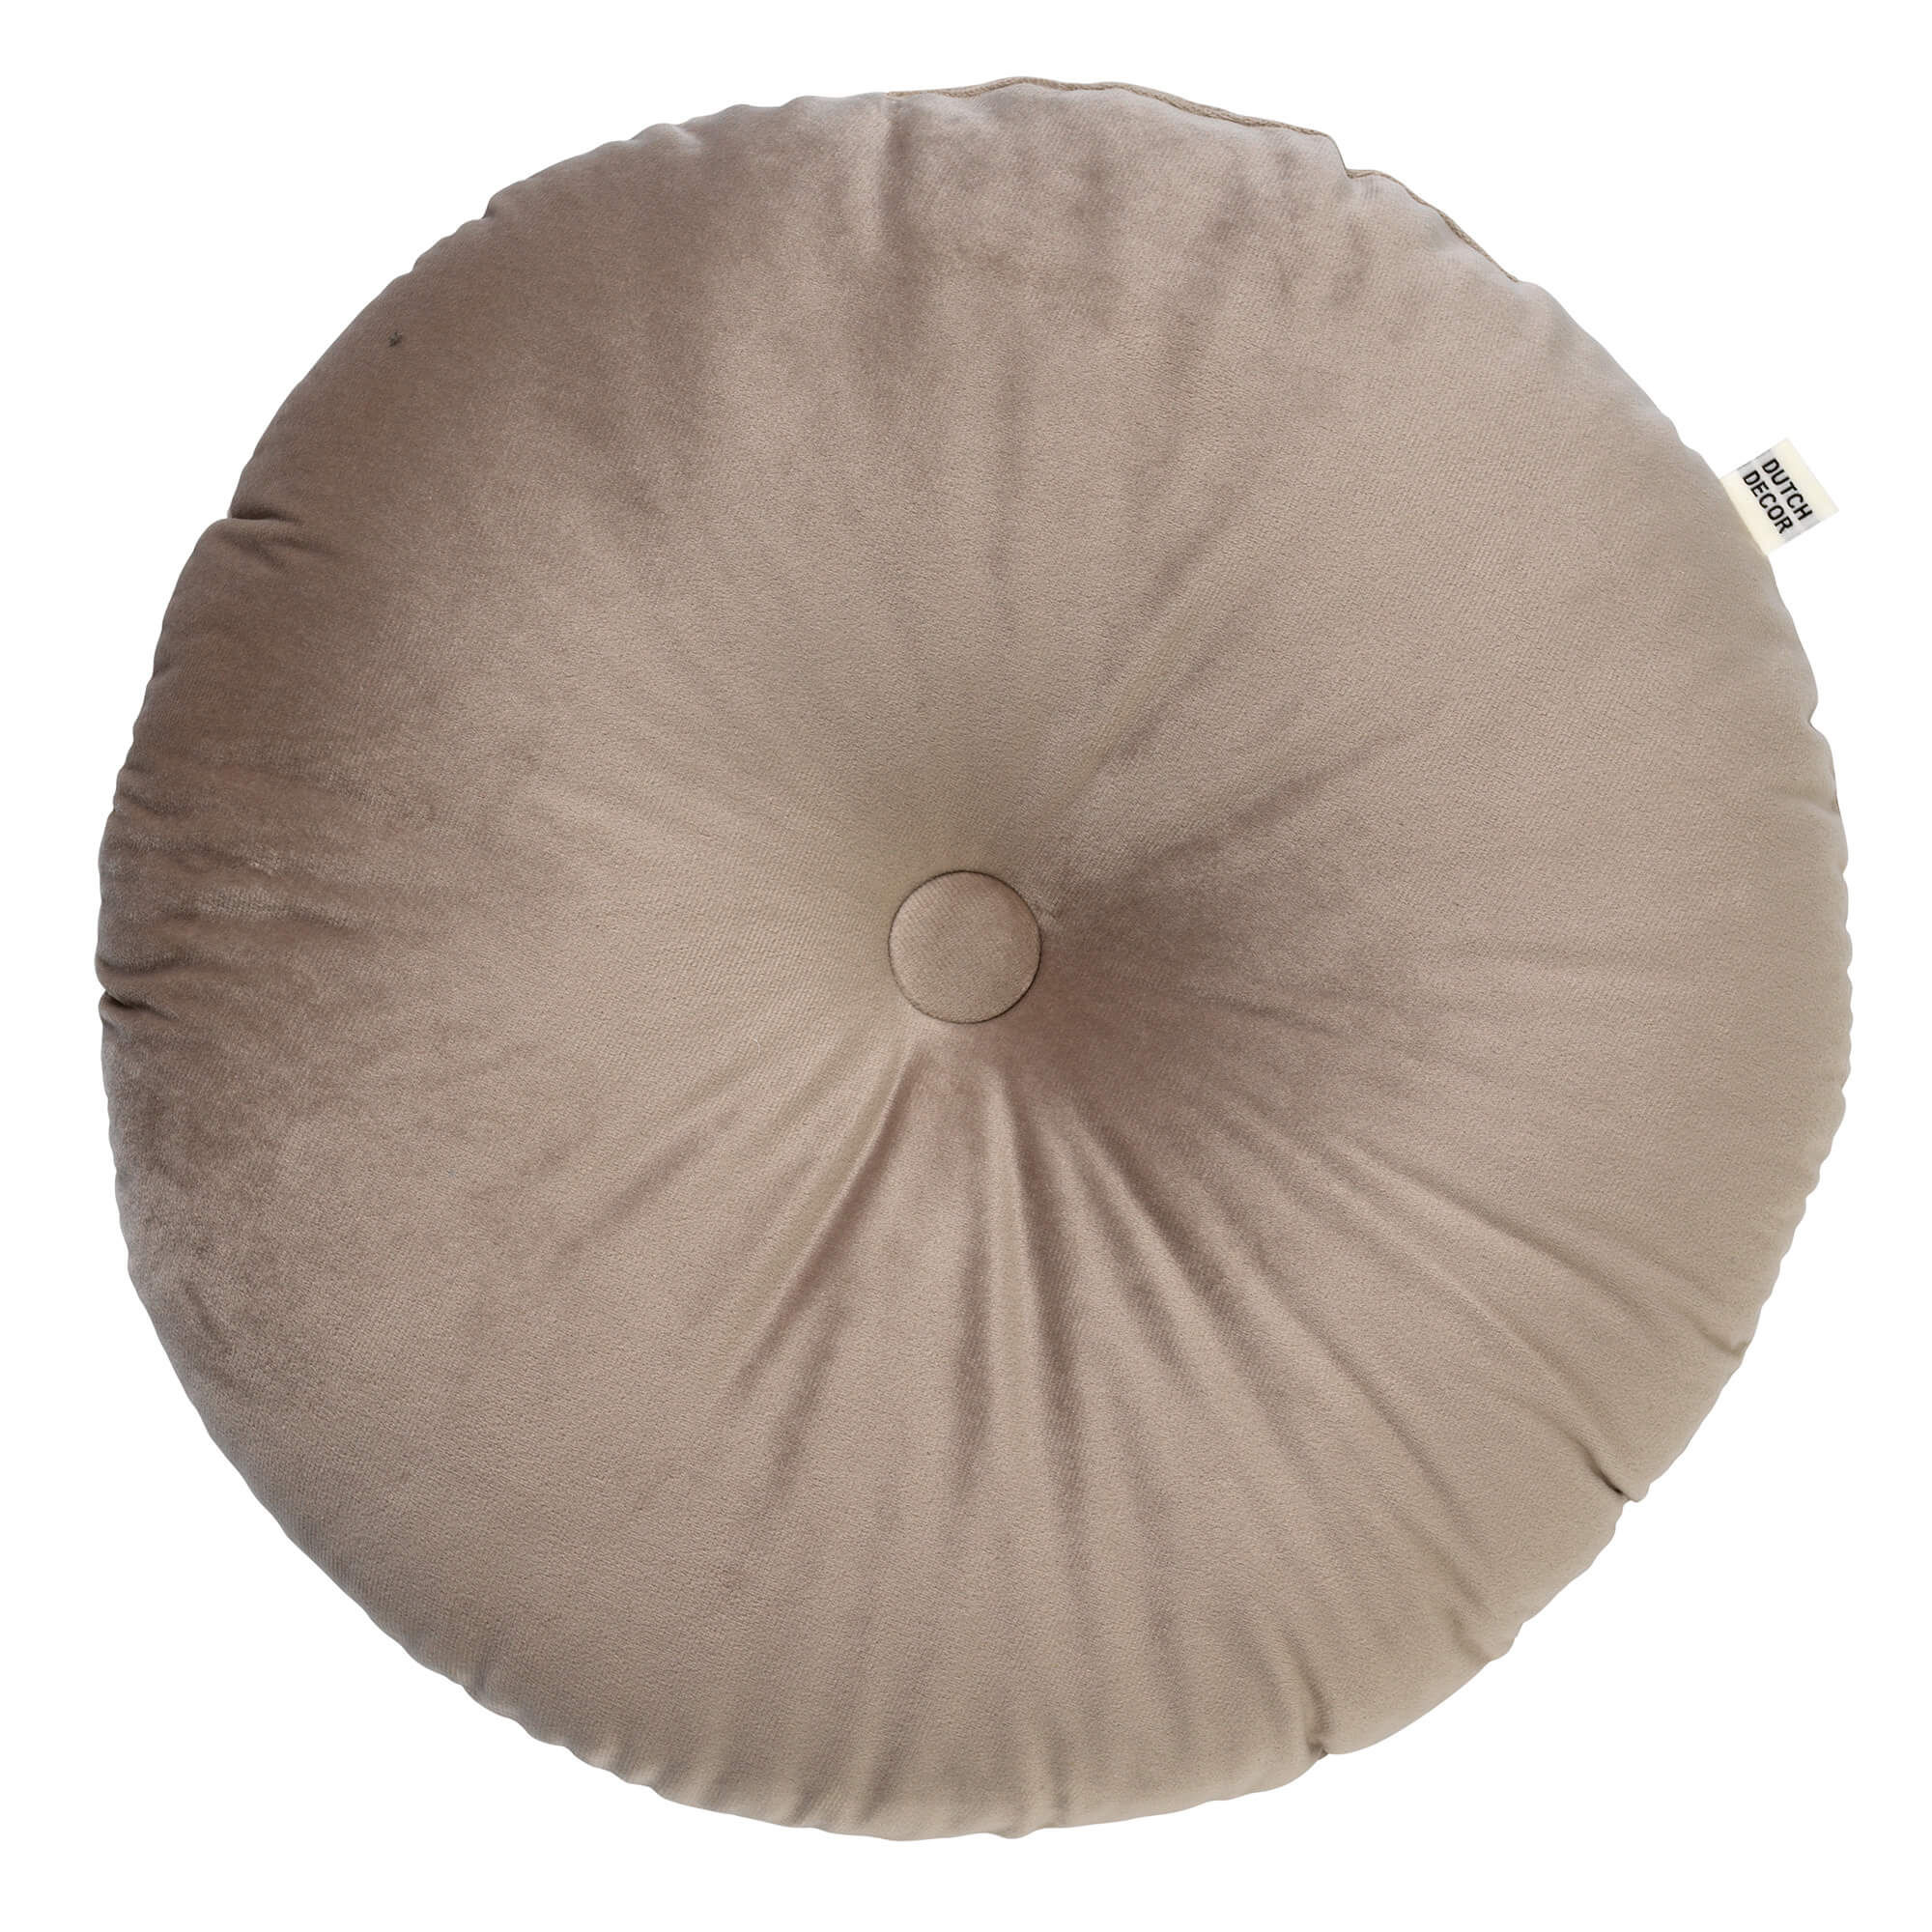 OLLY - Cushion 40 cm Pumice Stone - beige